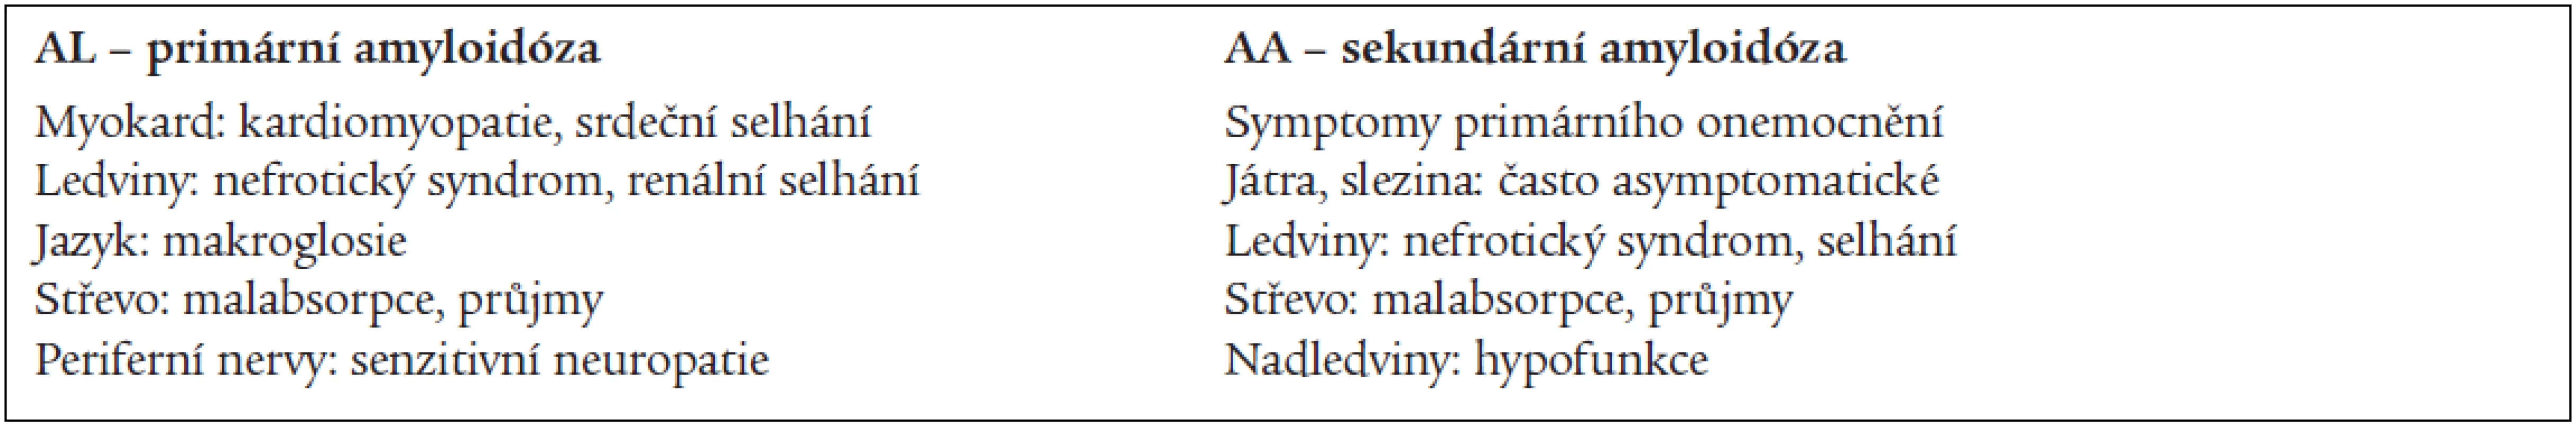 Postižení orgánů a klinické projevy amyloidózy (dle četnosti).